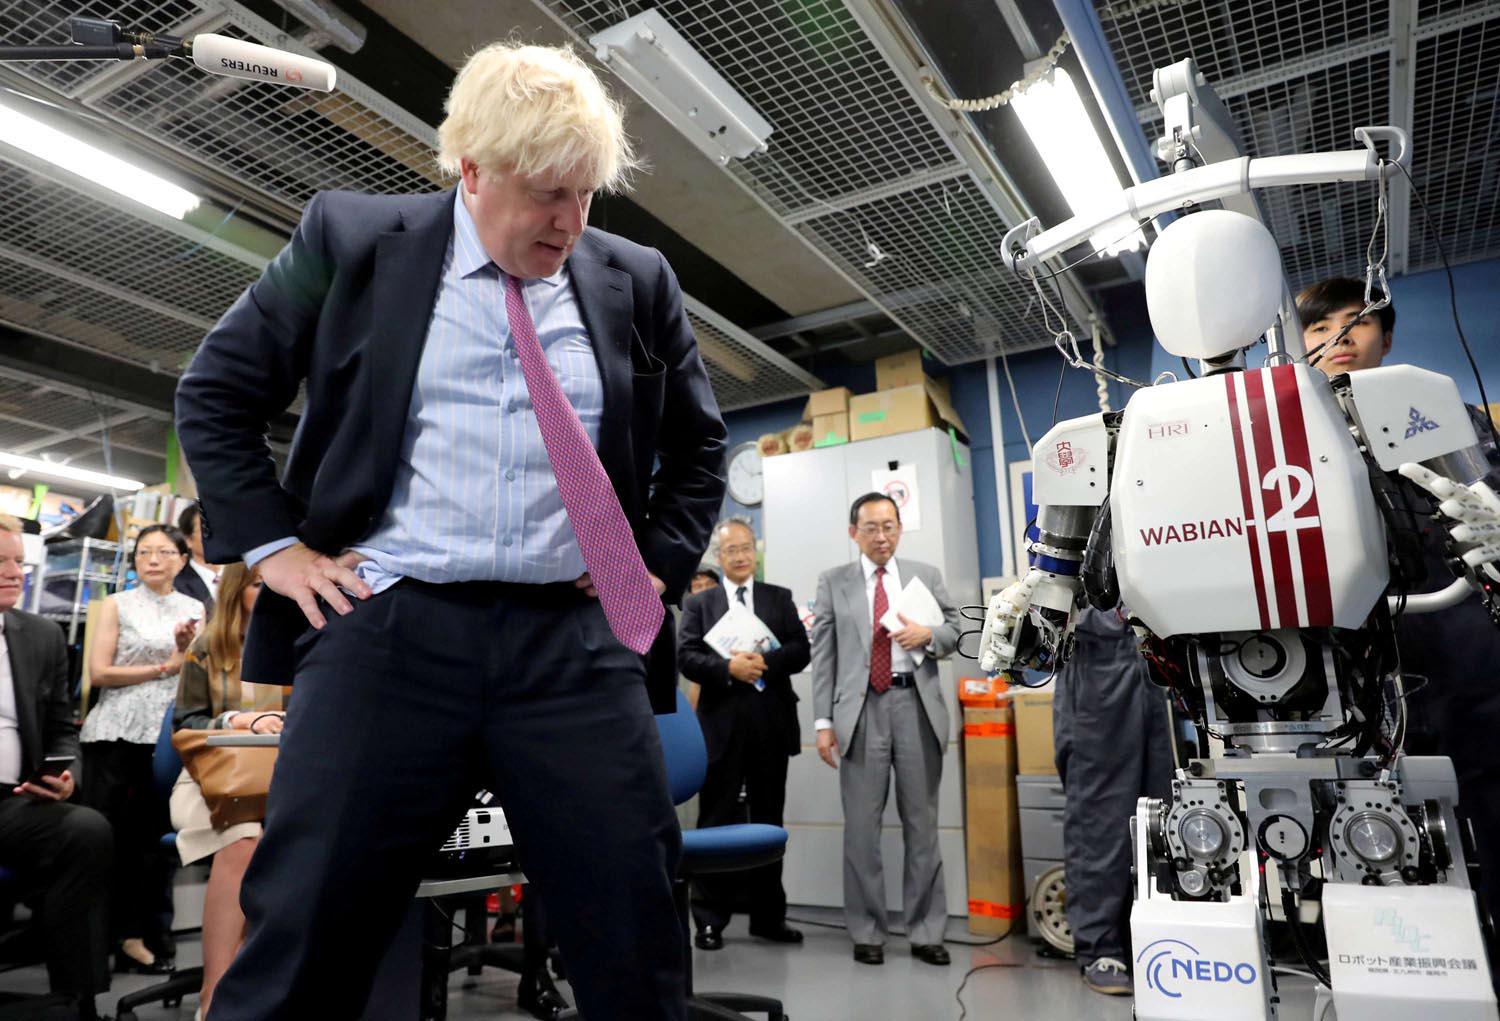 رئيس الوزراء البريطاني بوريس جونسون يستكشف روبوت في زيارة لليابان